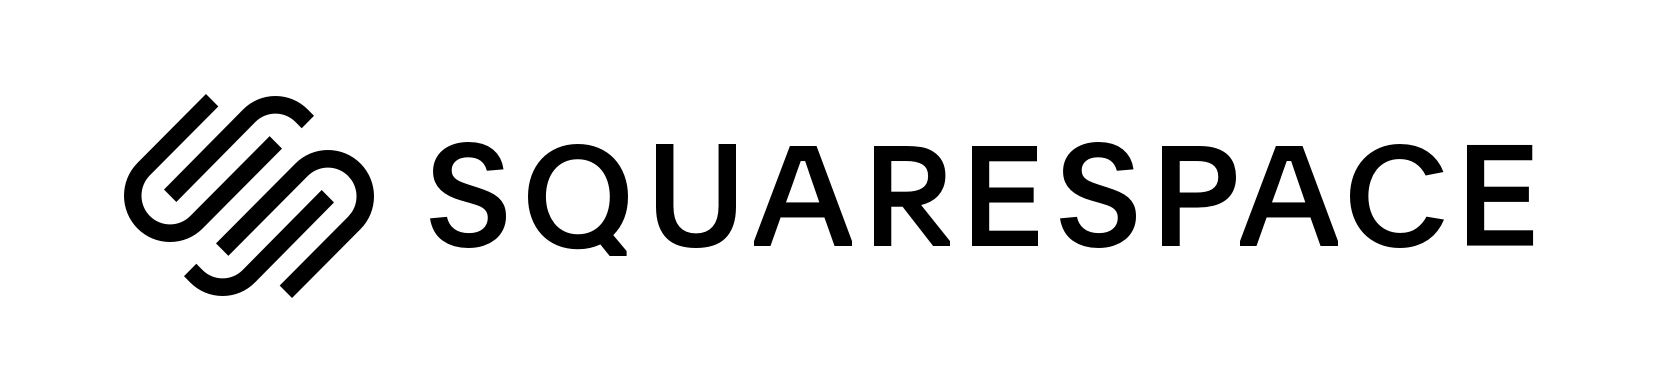 squarespace logo horizontal black - Những sai lầm trong đăng ký đám cưới cần tránh